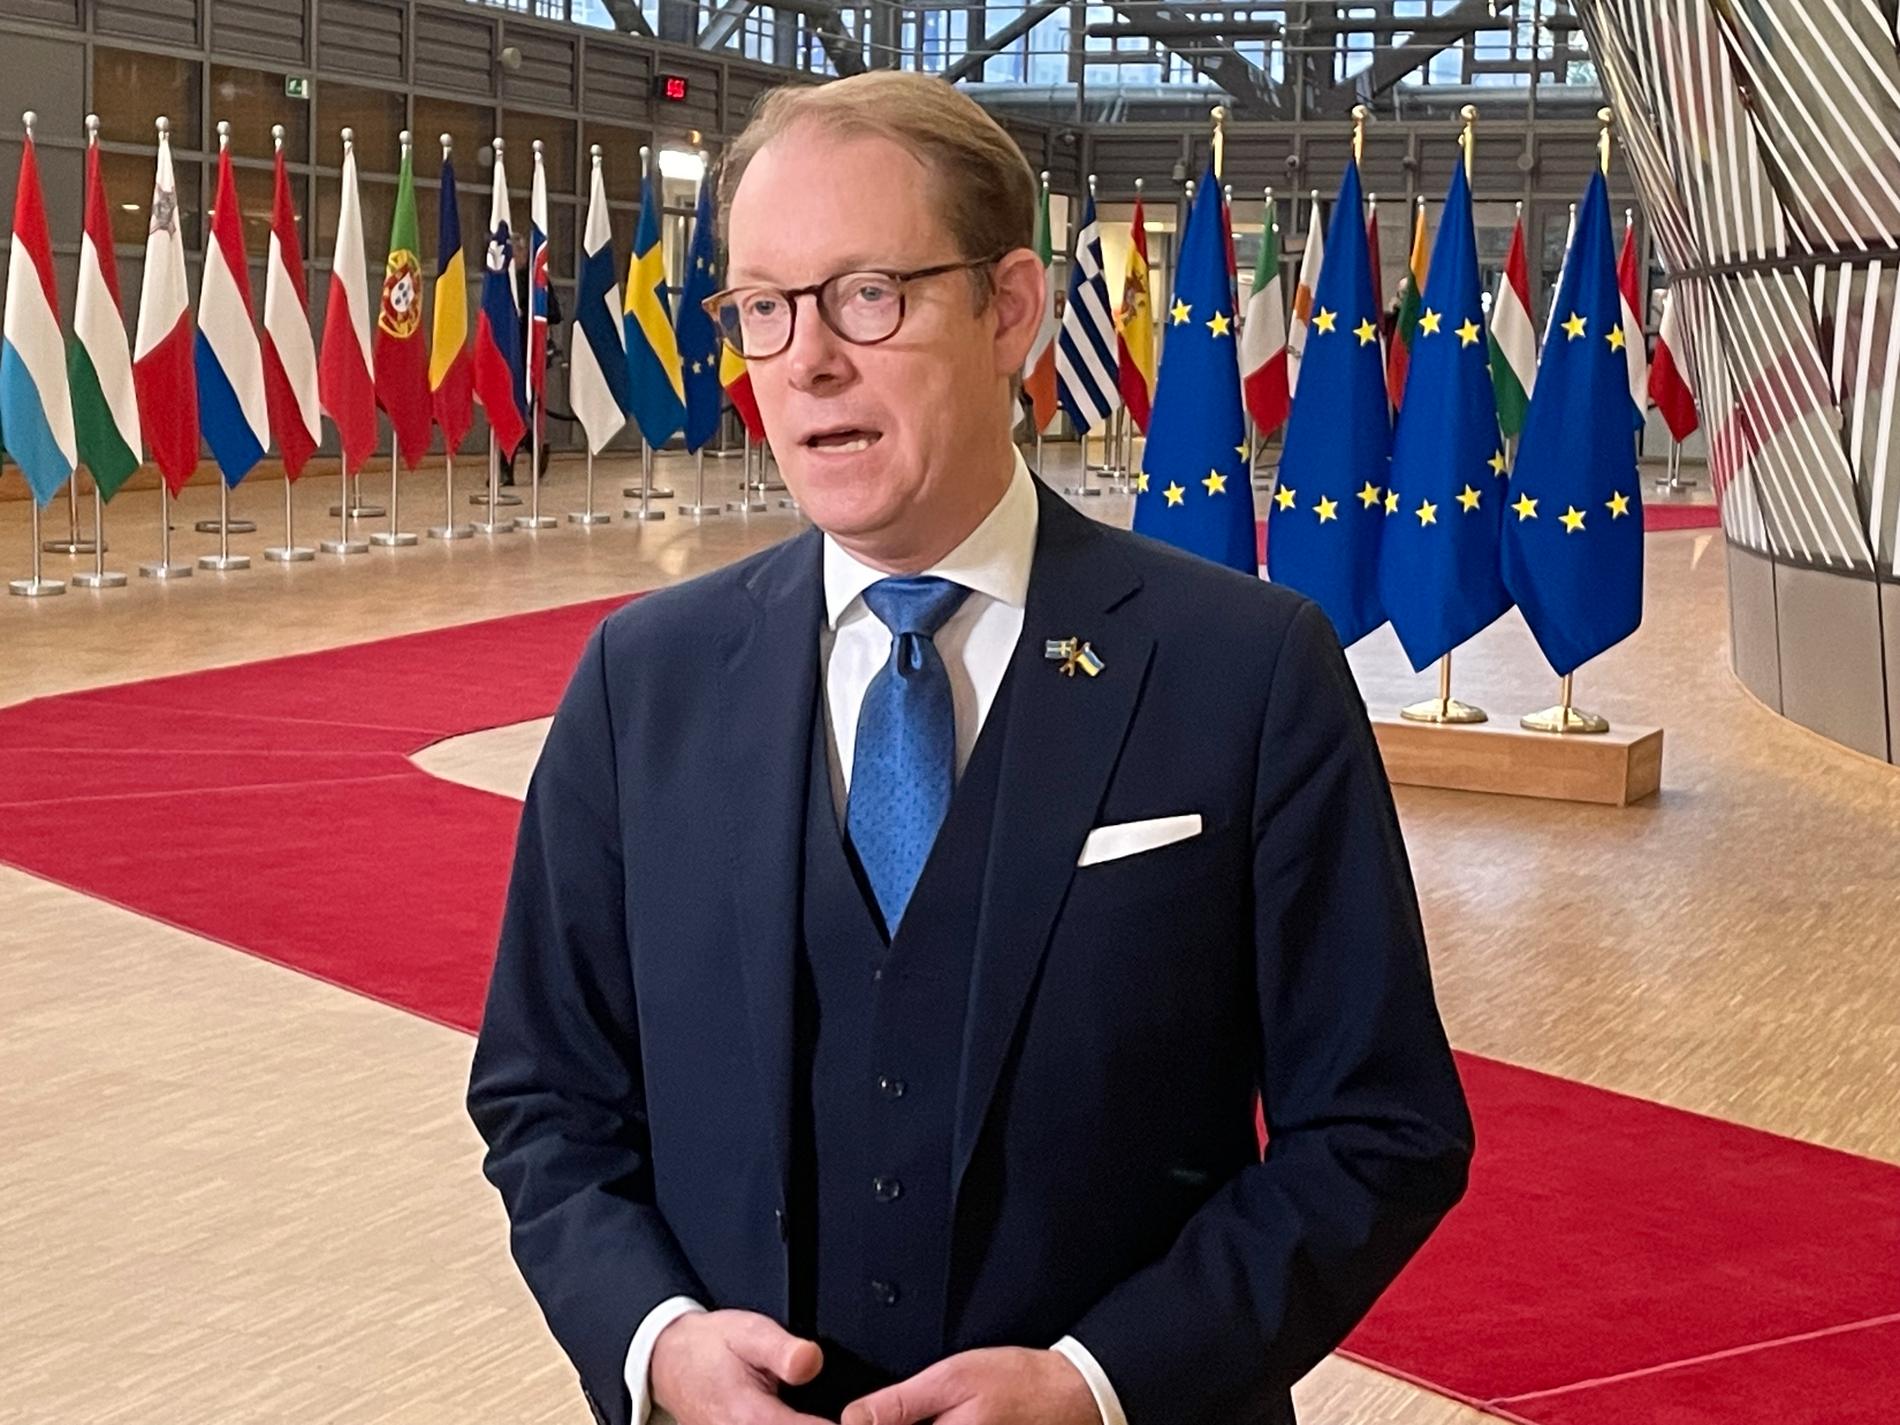 Utrikesminister Tobias Billström på väg in till måndagens EU-möte i Bryssel.